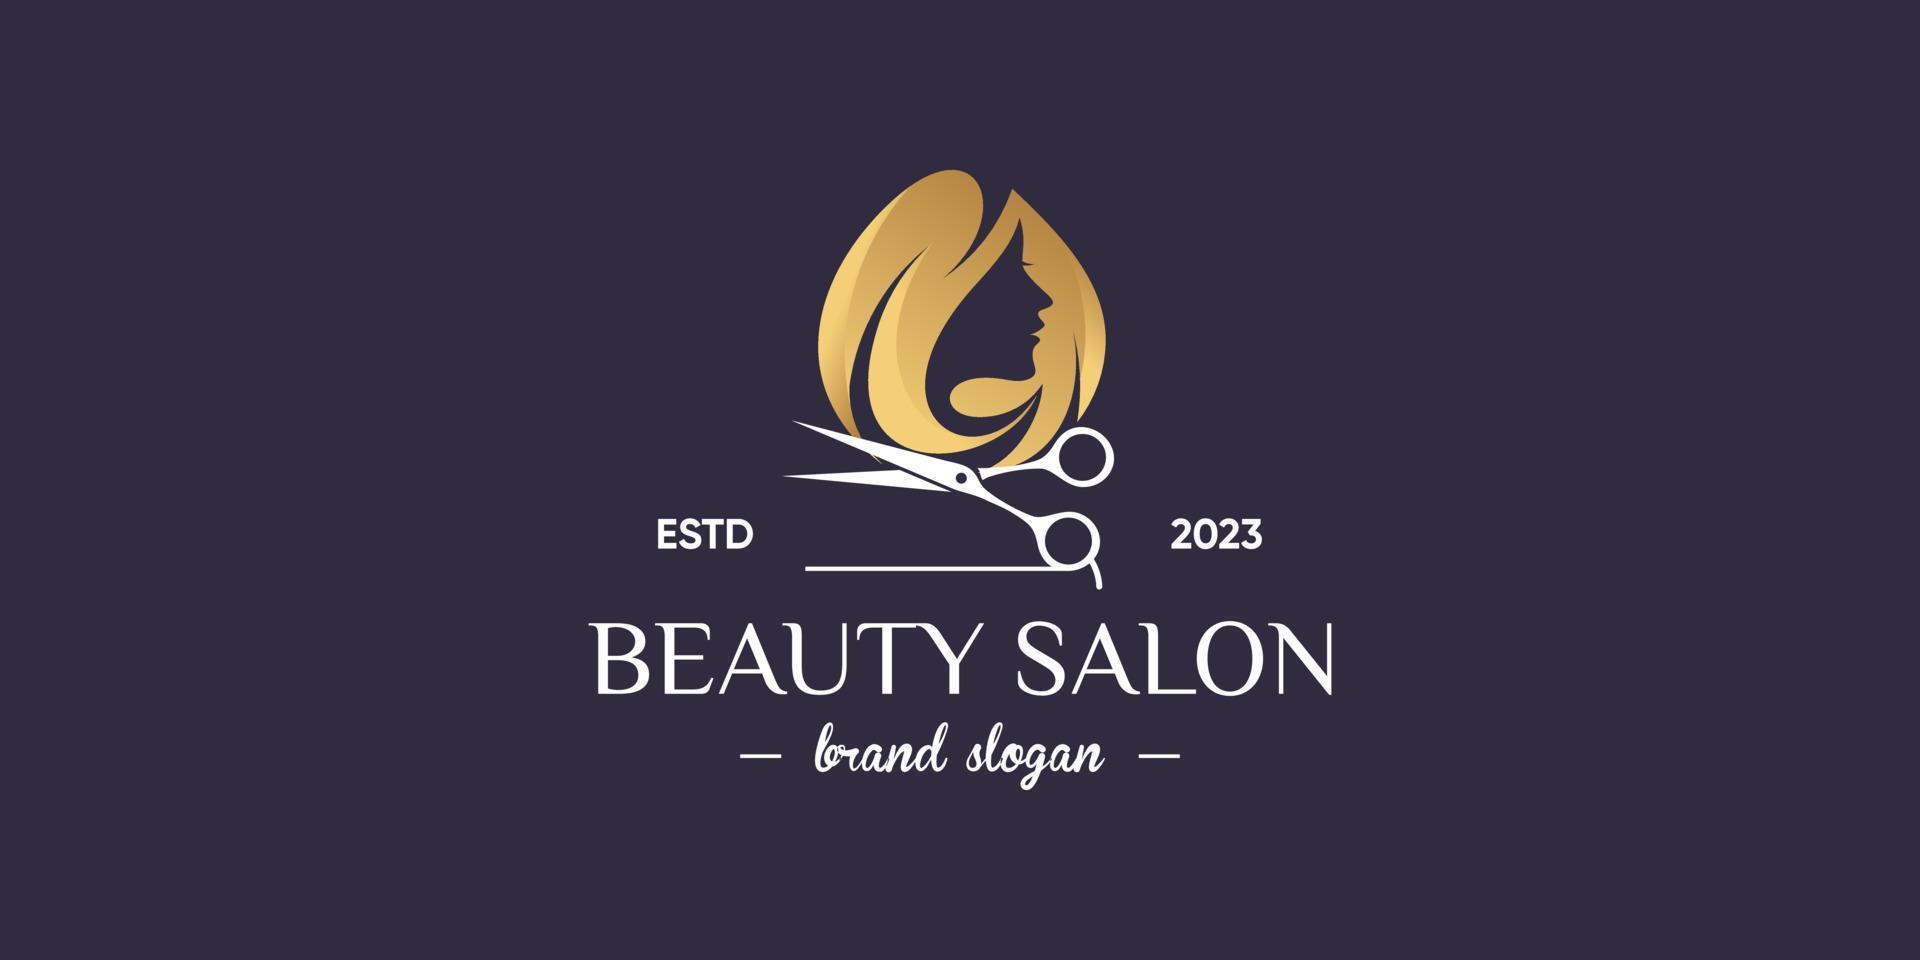 Woman logo design with beauty salon concept vector